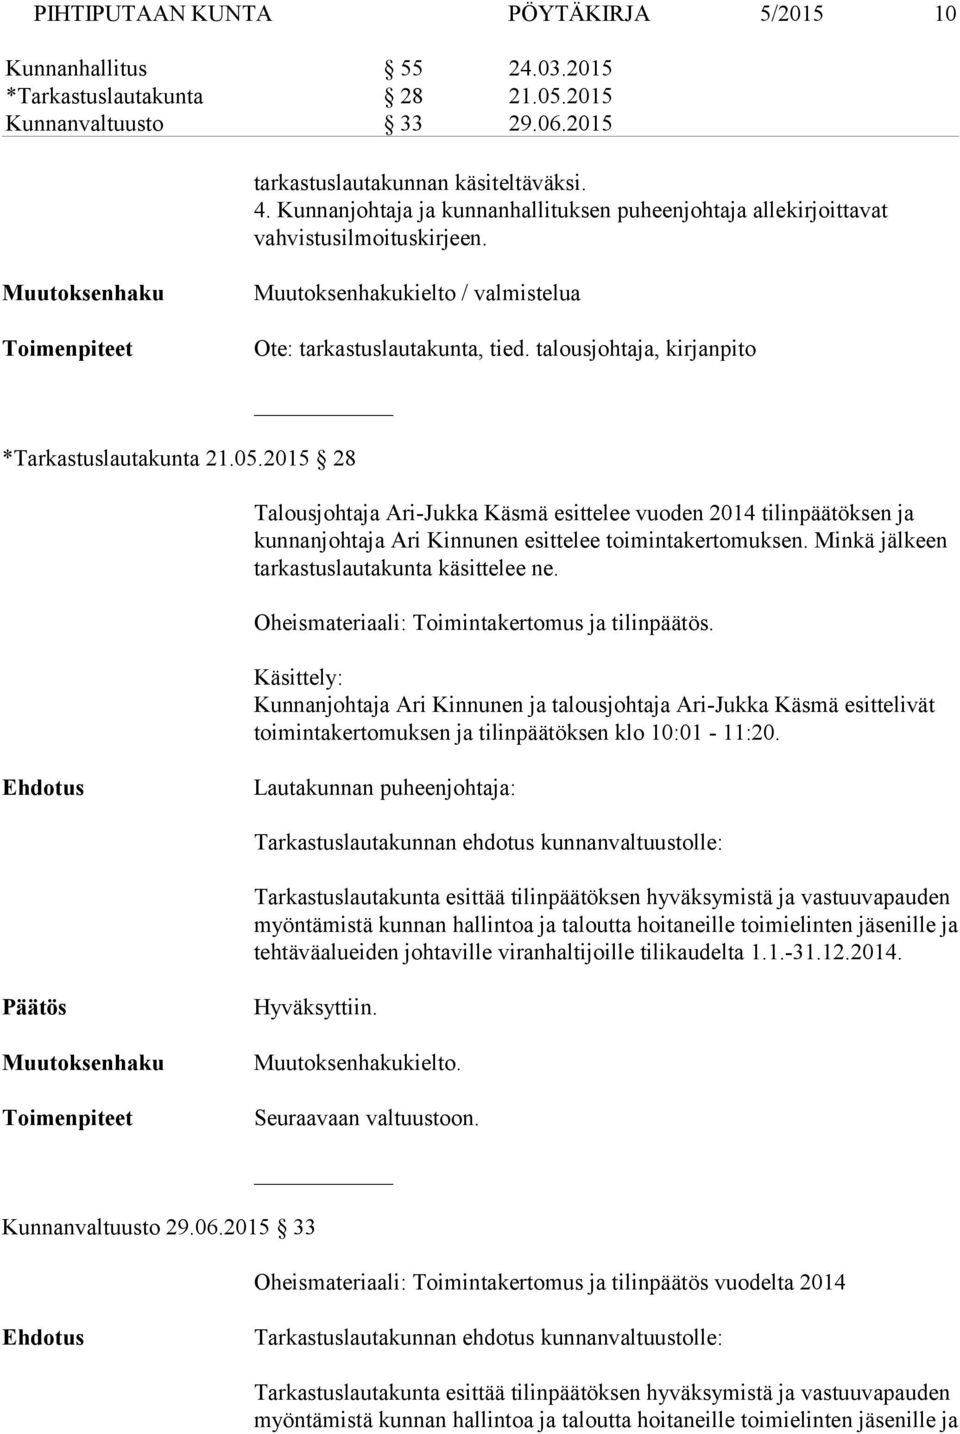 2015 28 Talousjohtaja Ari-Jukka Käsmä esittelee vuoden 2014 tilinpäätöksen ja kun nan joh ta ja Ari Kinnunen esittelee toimintakertomuksen. Minkä jälkeen tar kas tus lau ta kun ta käsittelee ne.